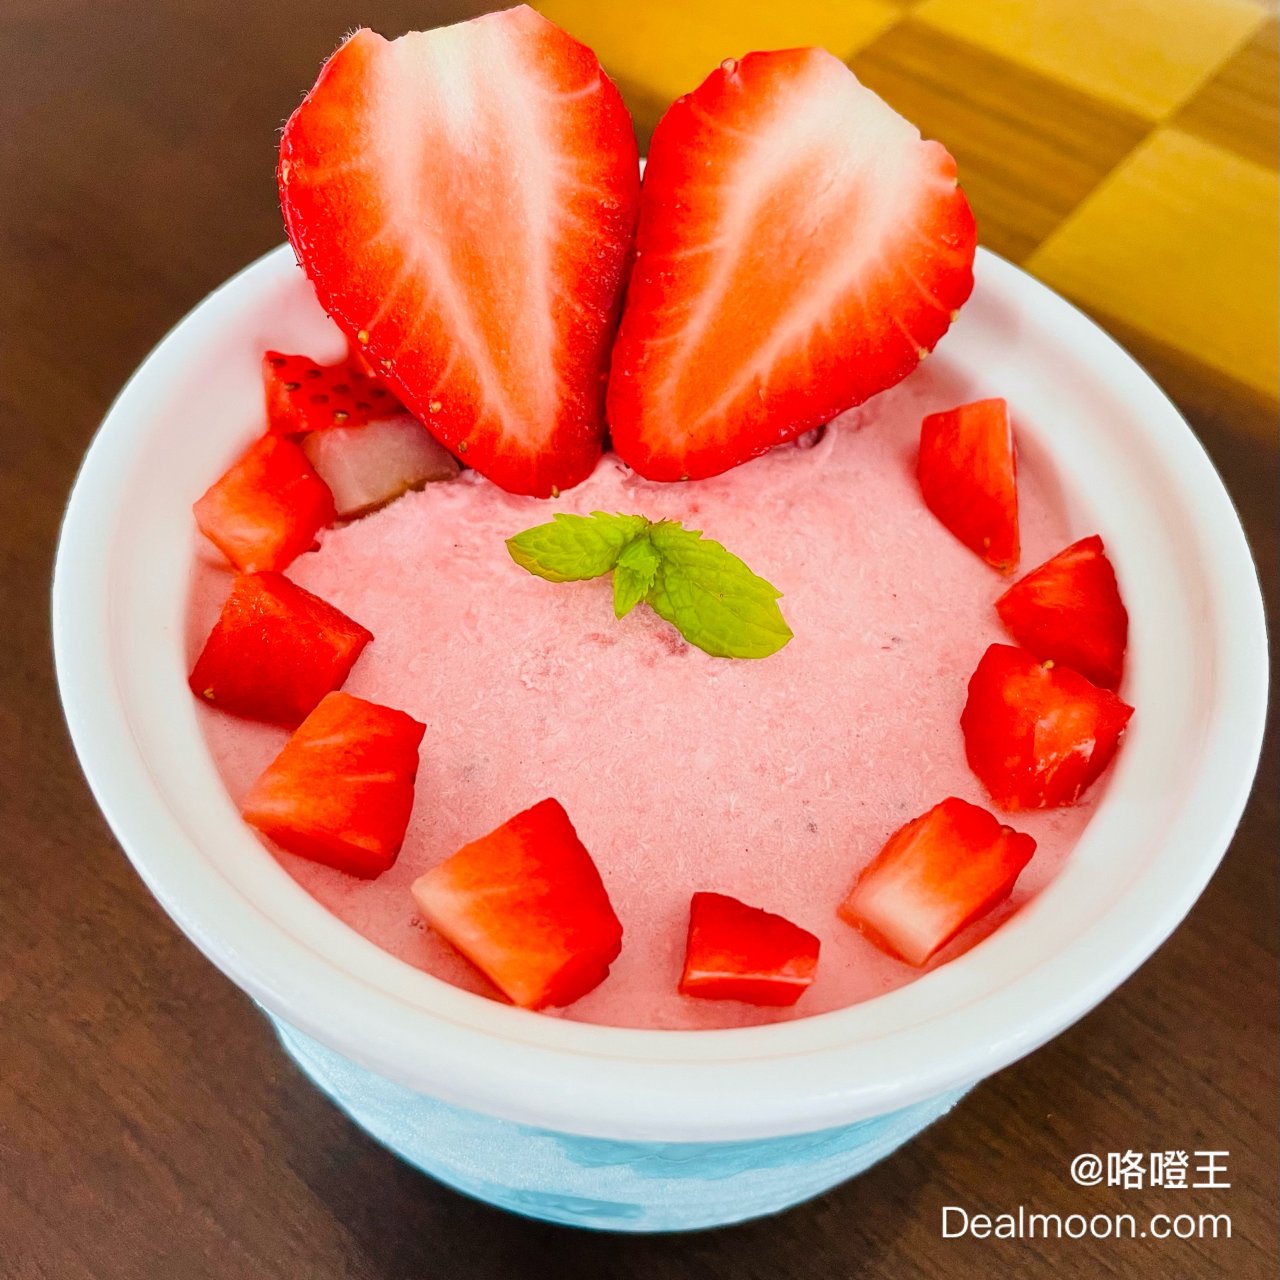 Costco有机草莓🍓自制草莓酱和冰淇淋...